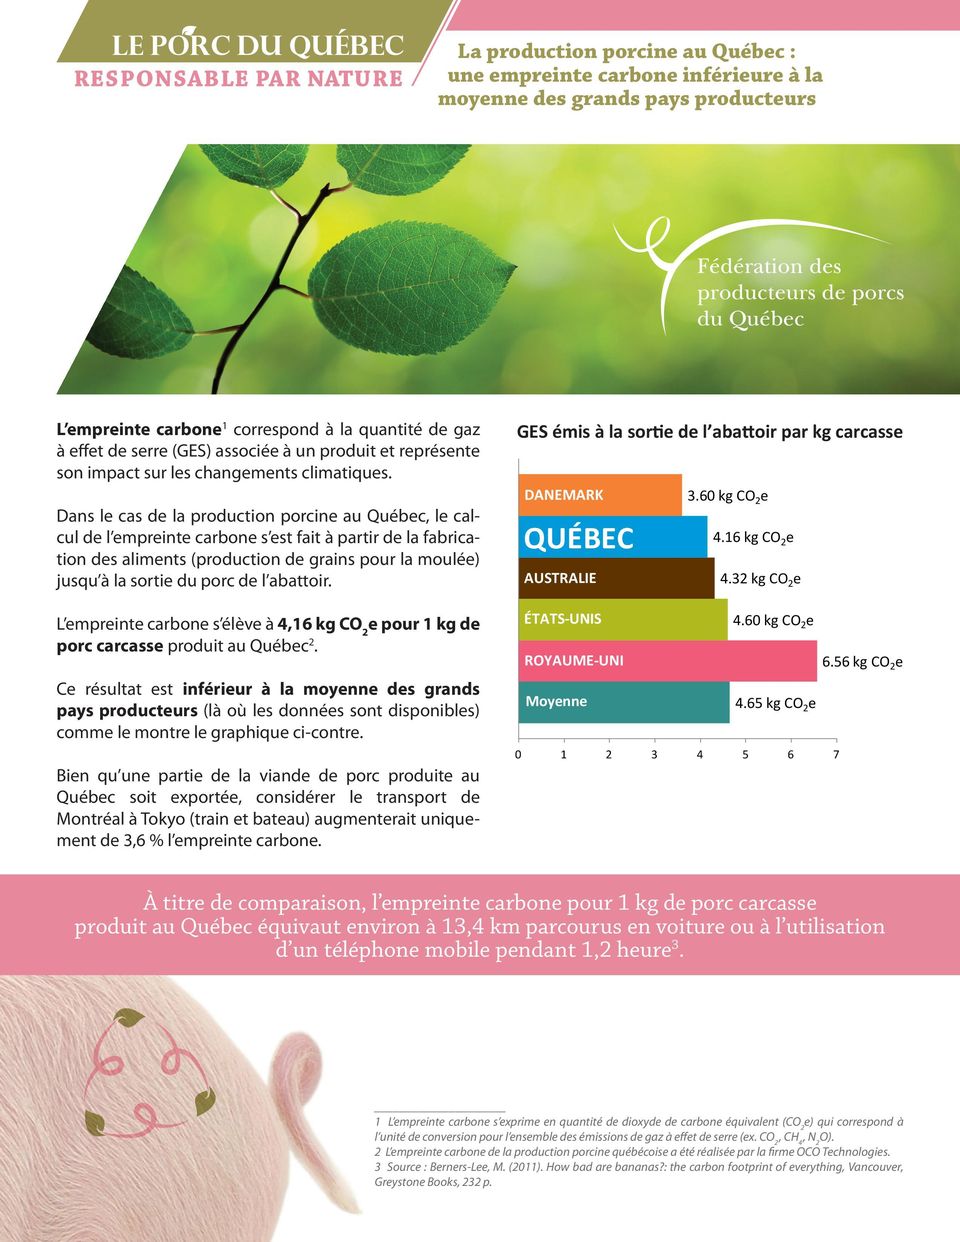 Dans le cas de la production porcine au Québec, le calcul de l empreinte carbone s est fait à partir de la fabrication des aliments (production de grains pour la moulée) jusqu à la sortie du porc de